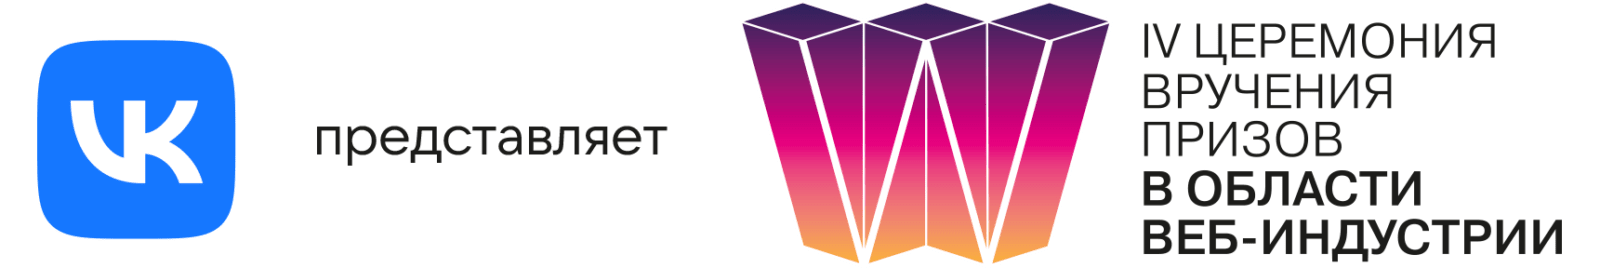 VK и IV Национальная премия в области веб-индустрии объявляет номинантов